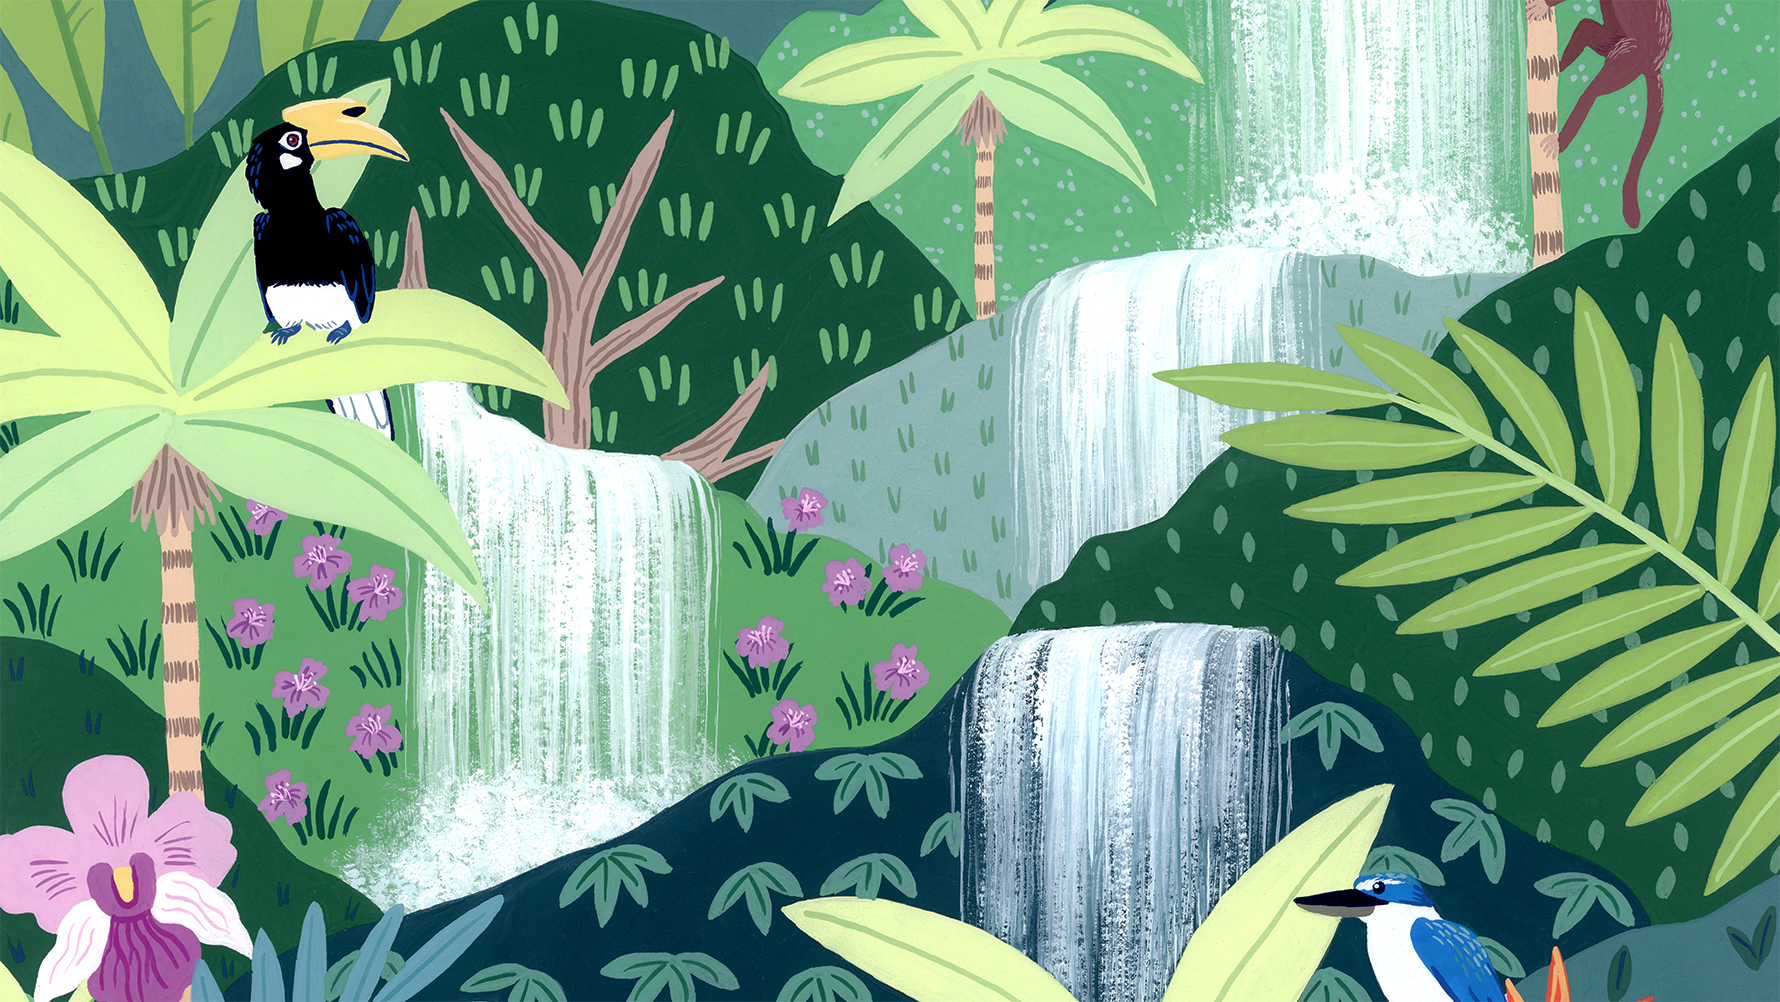  Details of Rainforest Falls Original Gouache Painting